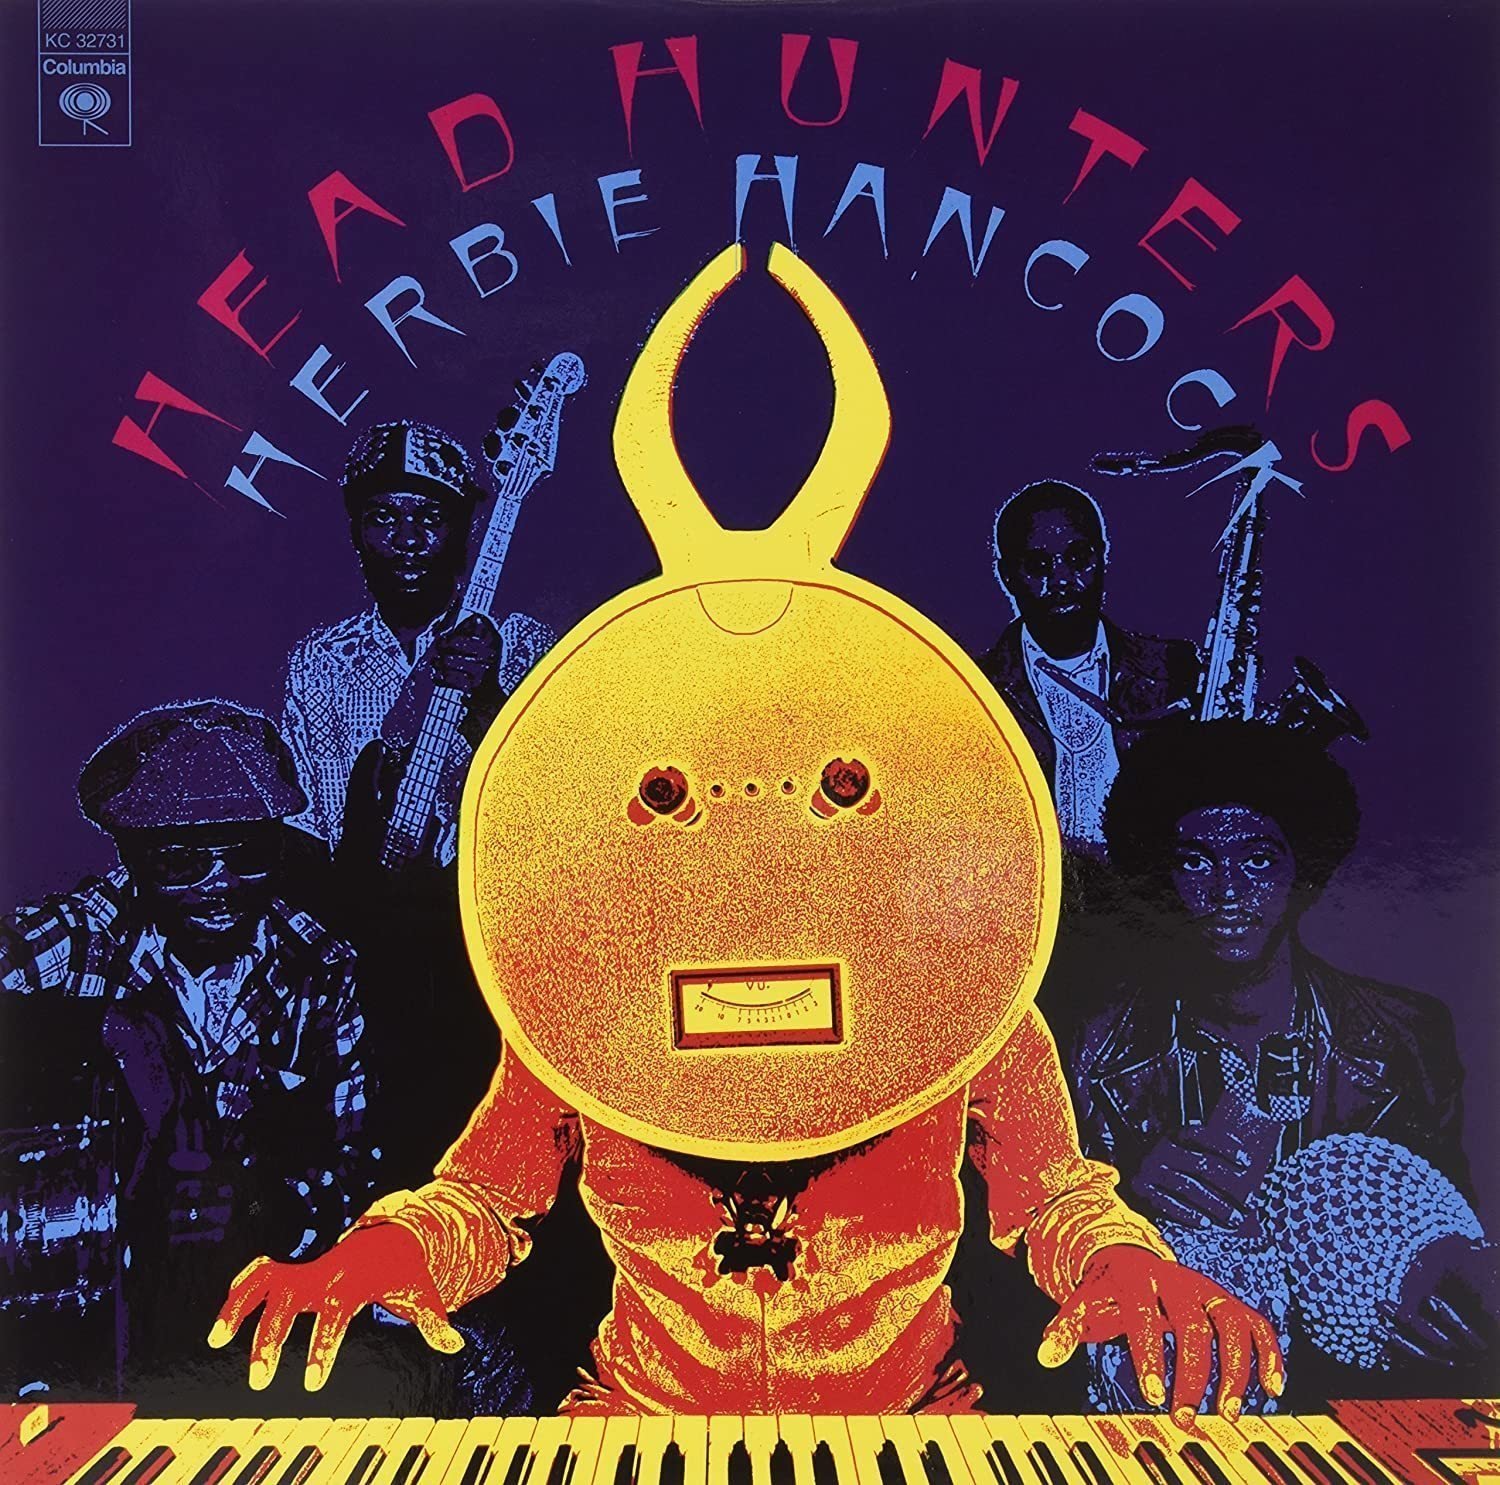 Schallplatte Herbie Hancock - Head Hunters (LP)